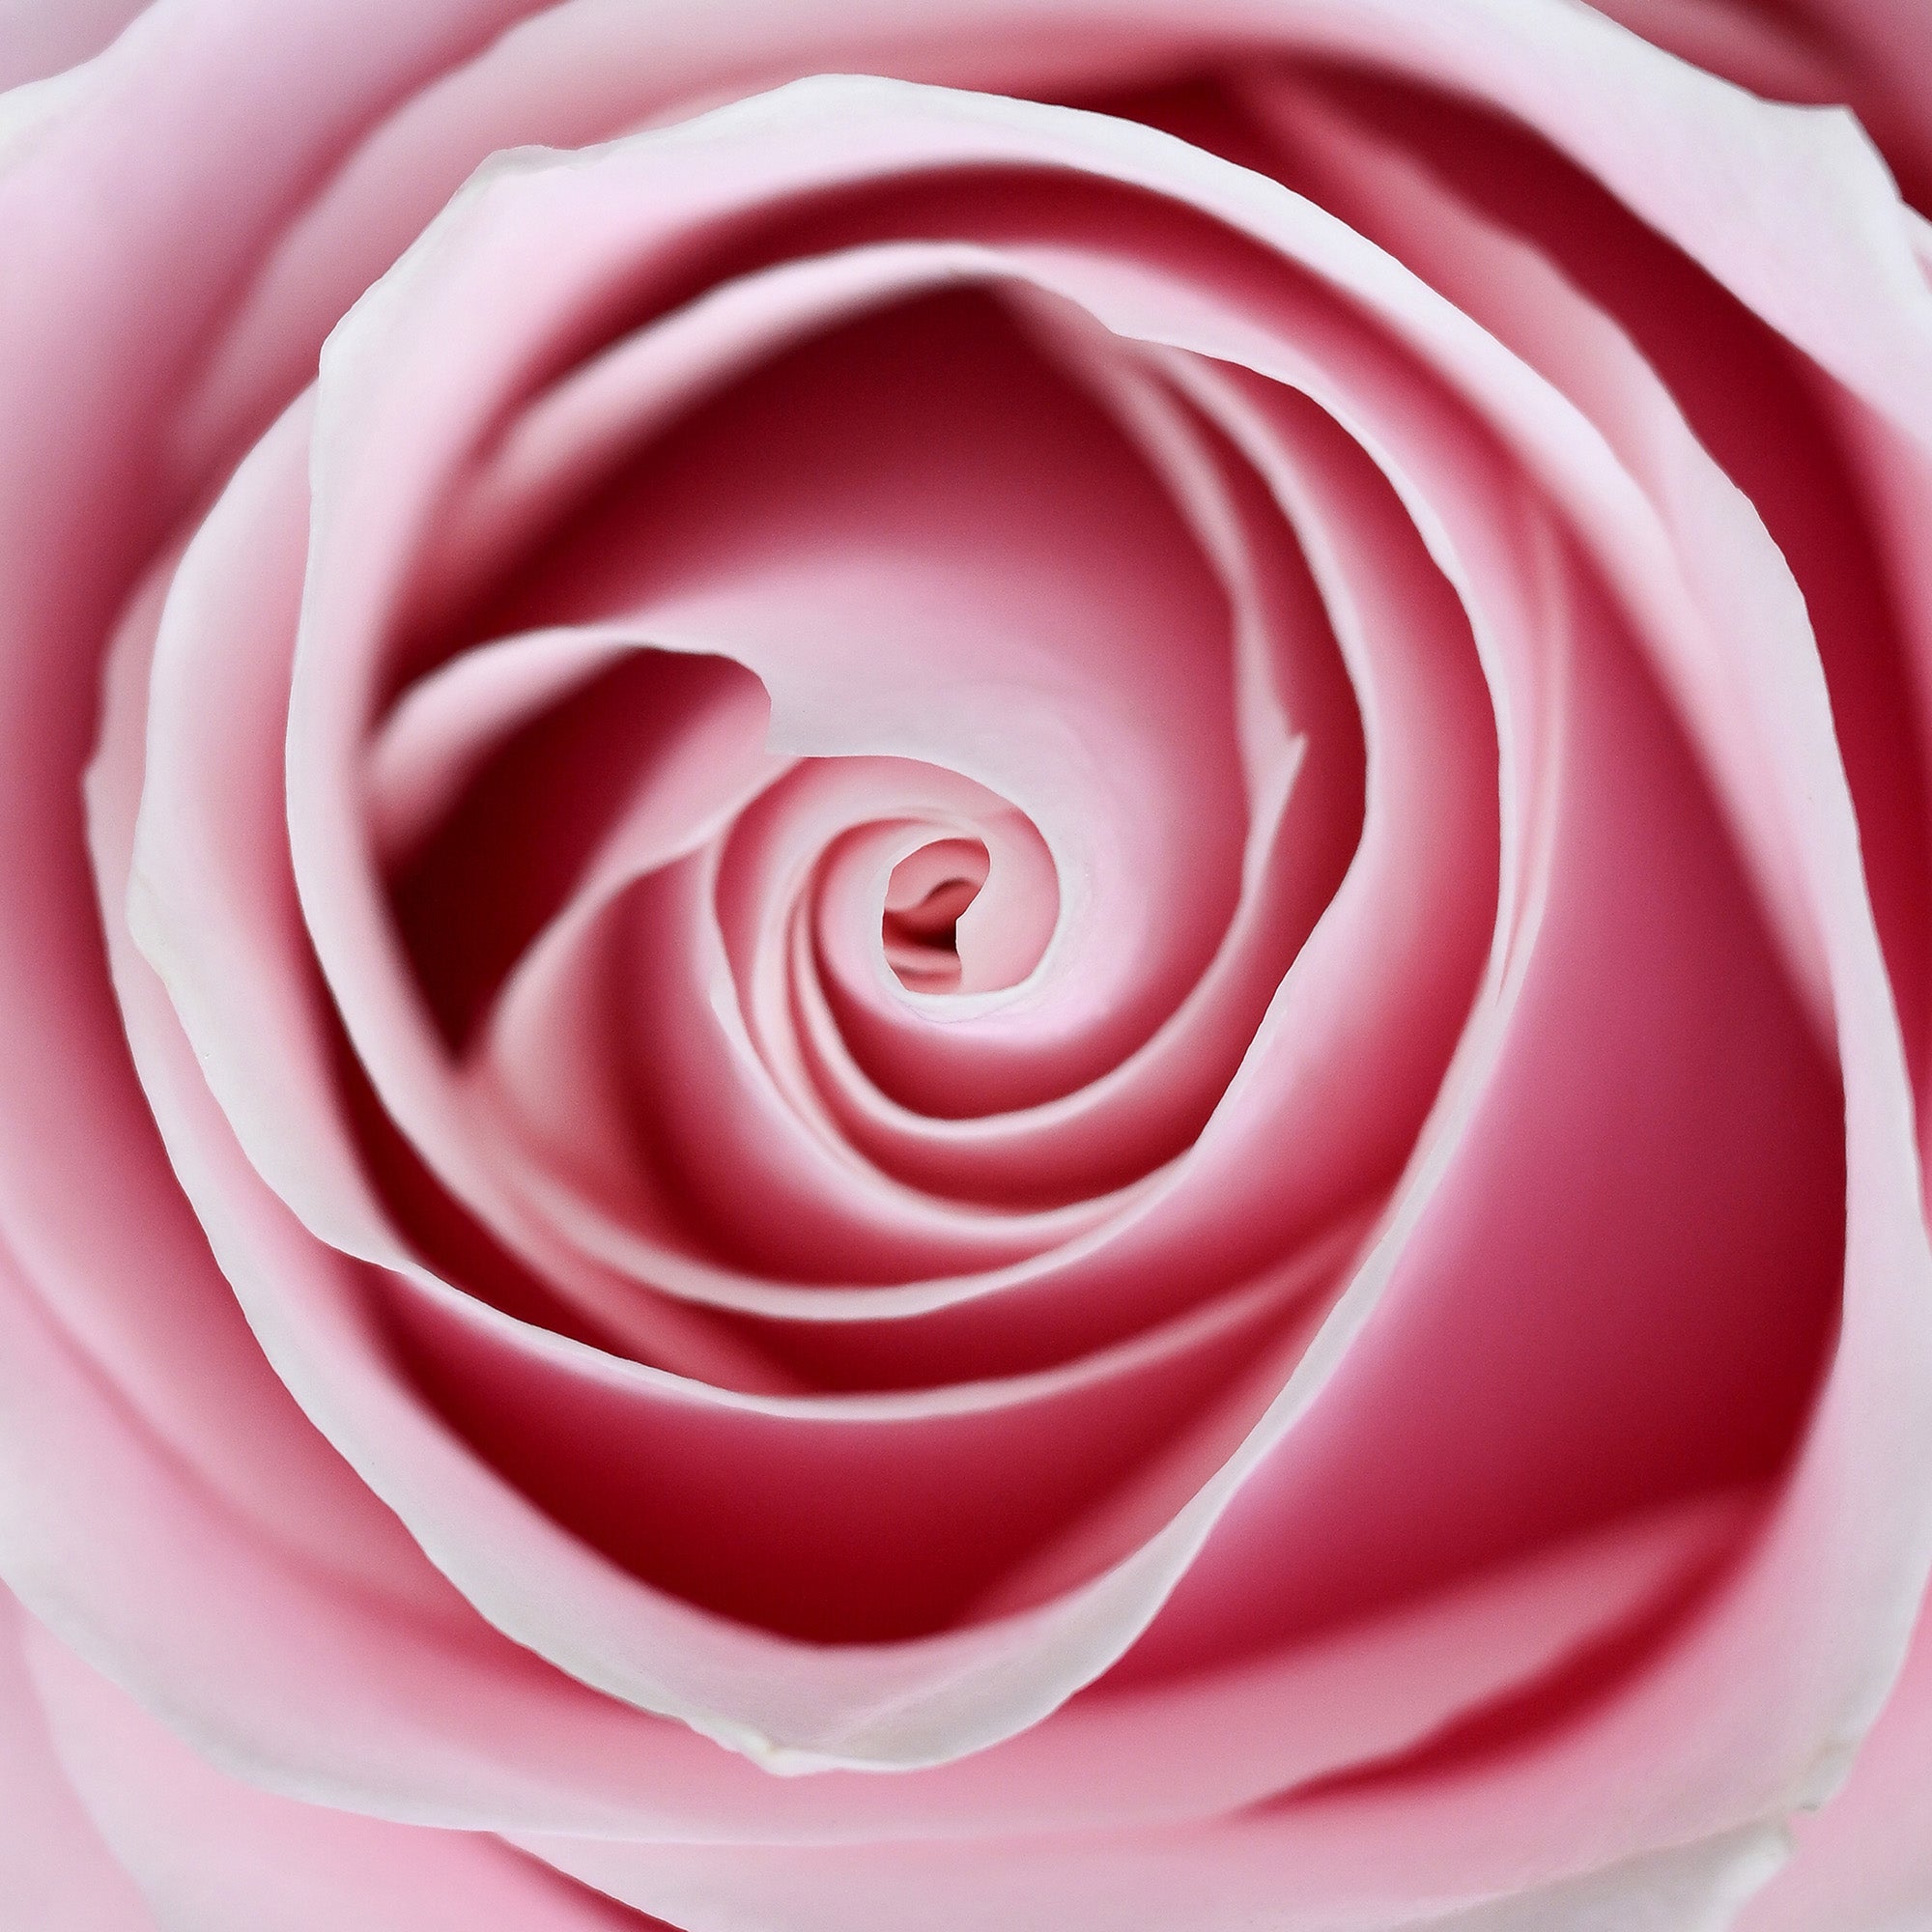 "Eine zartrosa Rose, deren Blütenblätter sich um den zentralen Mittelpunkt winden und eine harmonische Schönheit ausstrahlen."